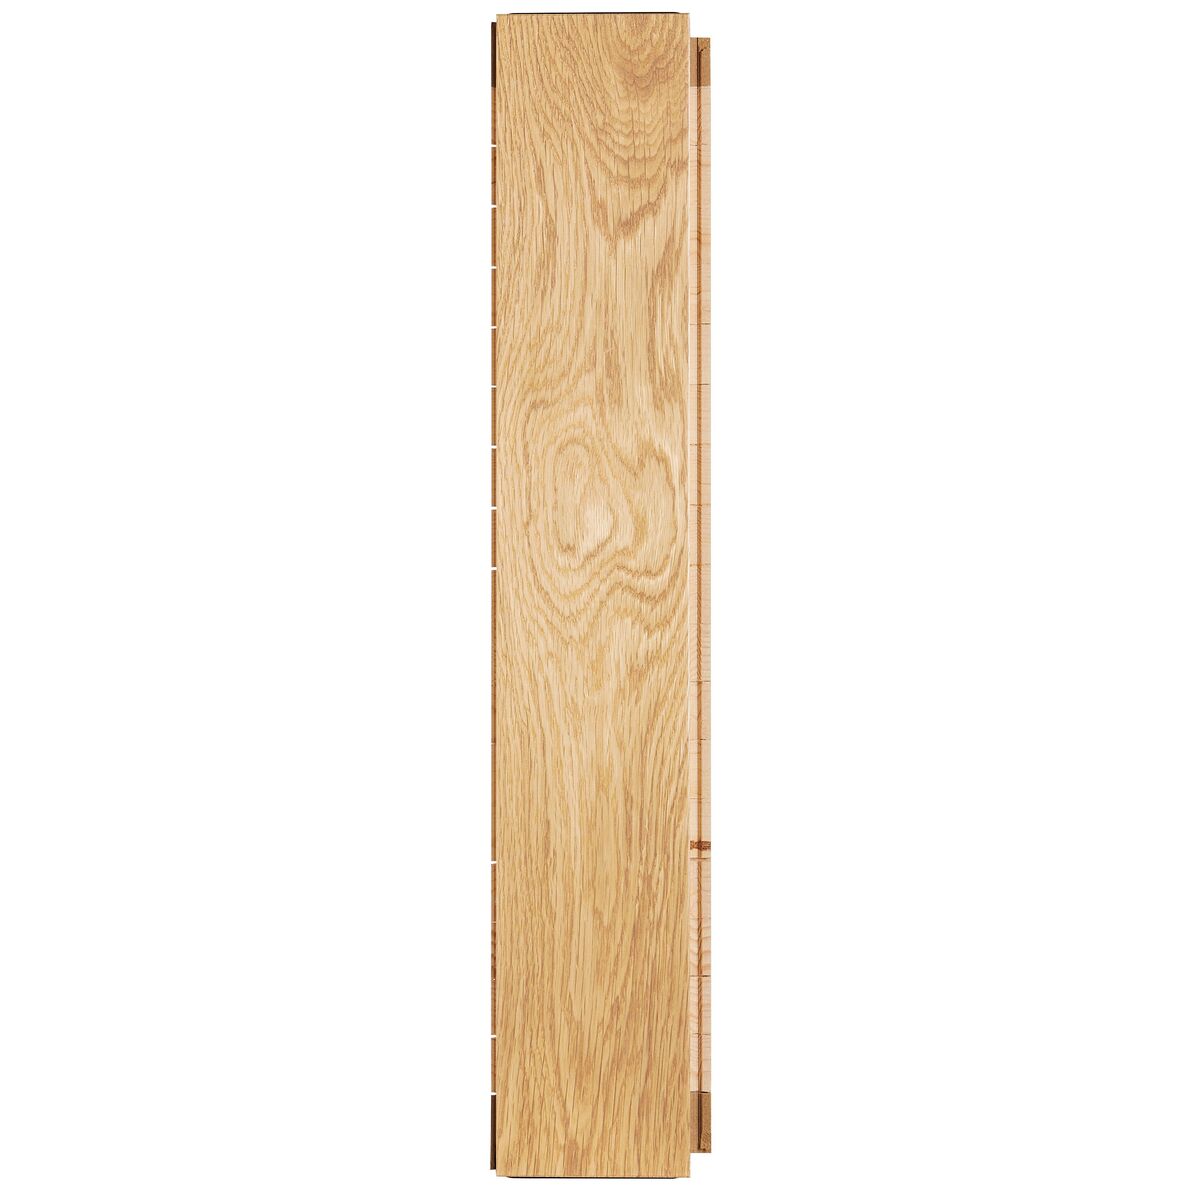 Podłoga drewniana deska trójwarstwowa jodełka klasyczna dąb szczotkowany 1-lamelowa lakier matowy 14 mm Barlinek